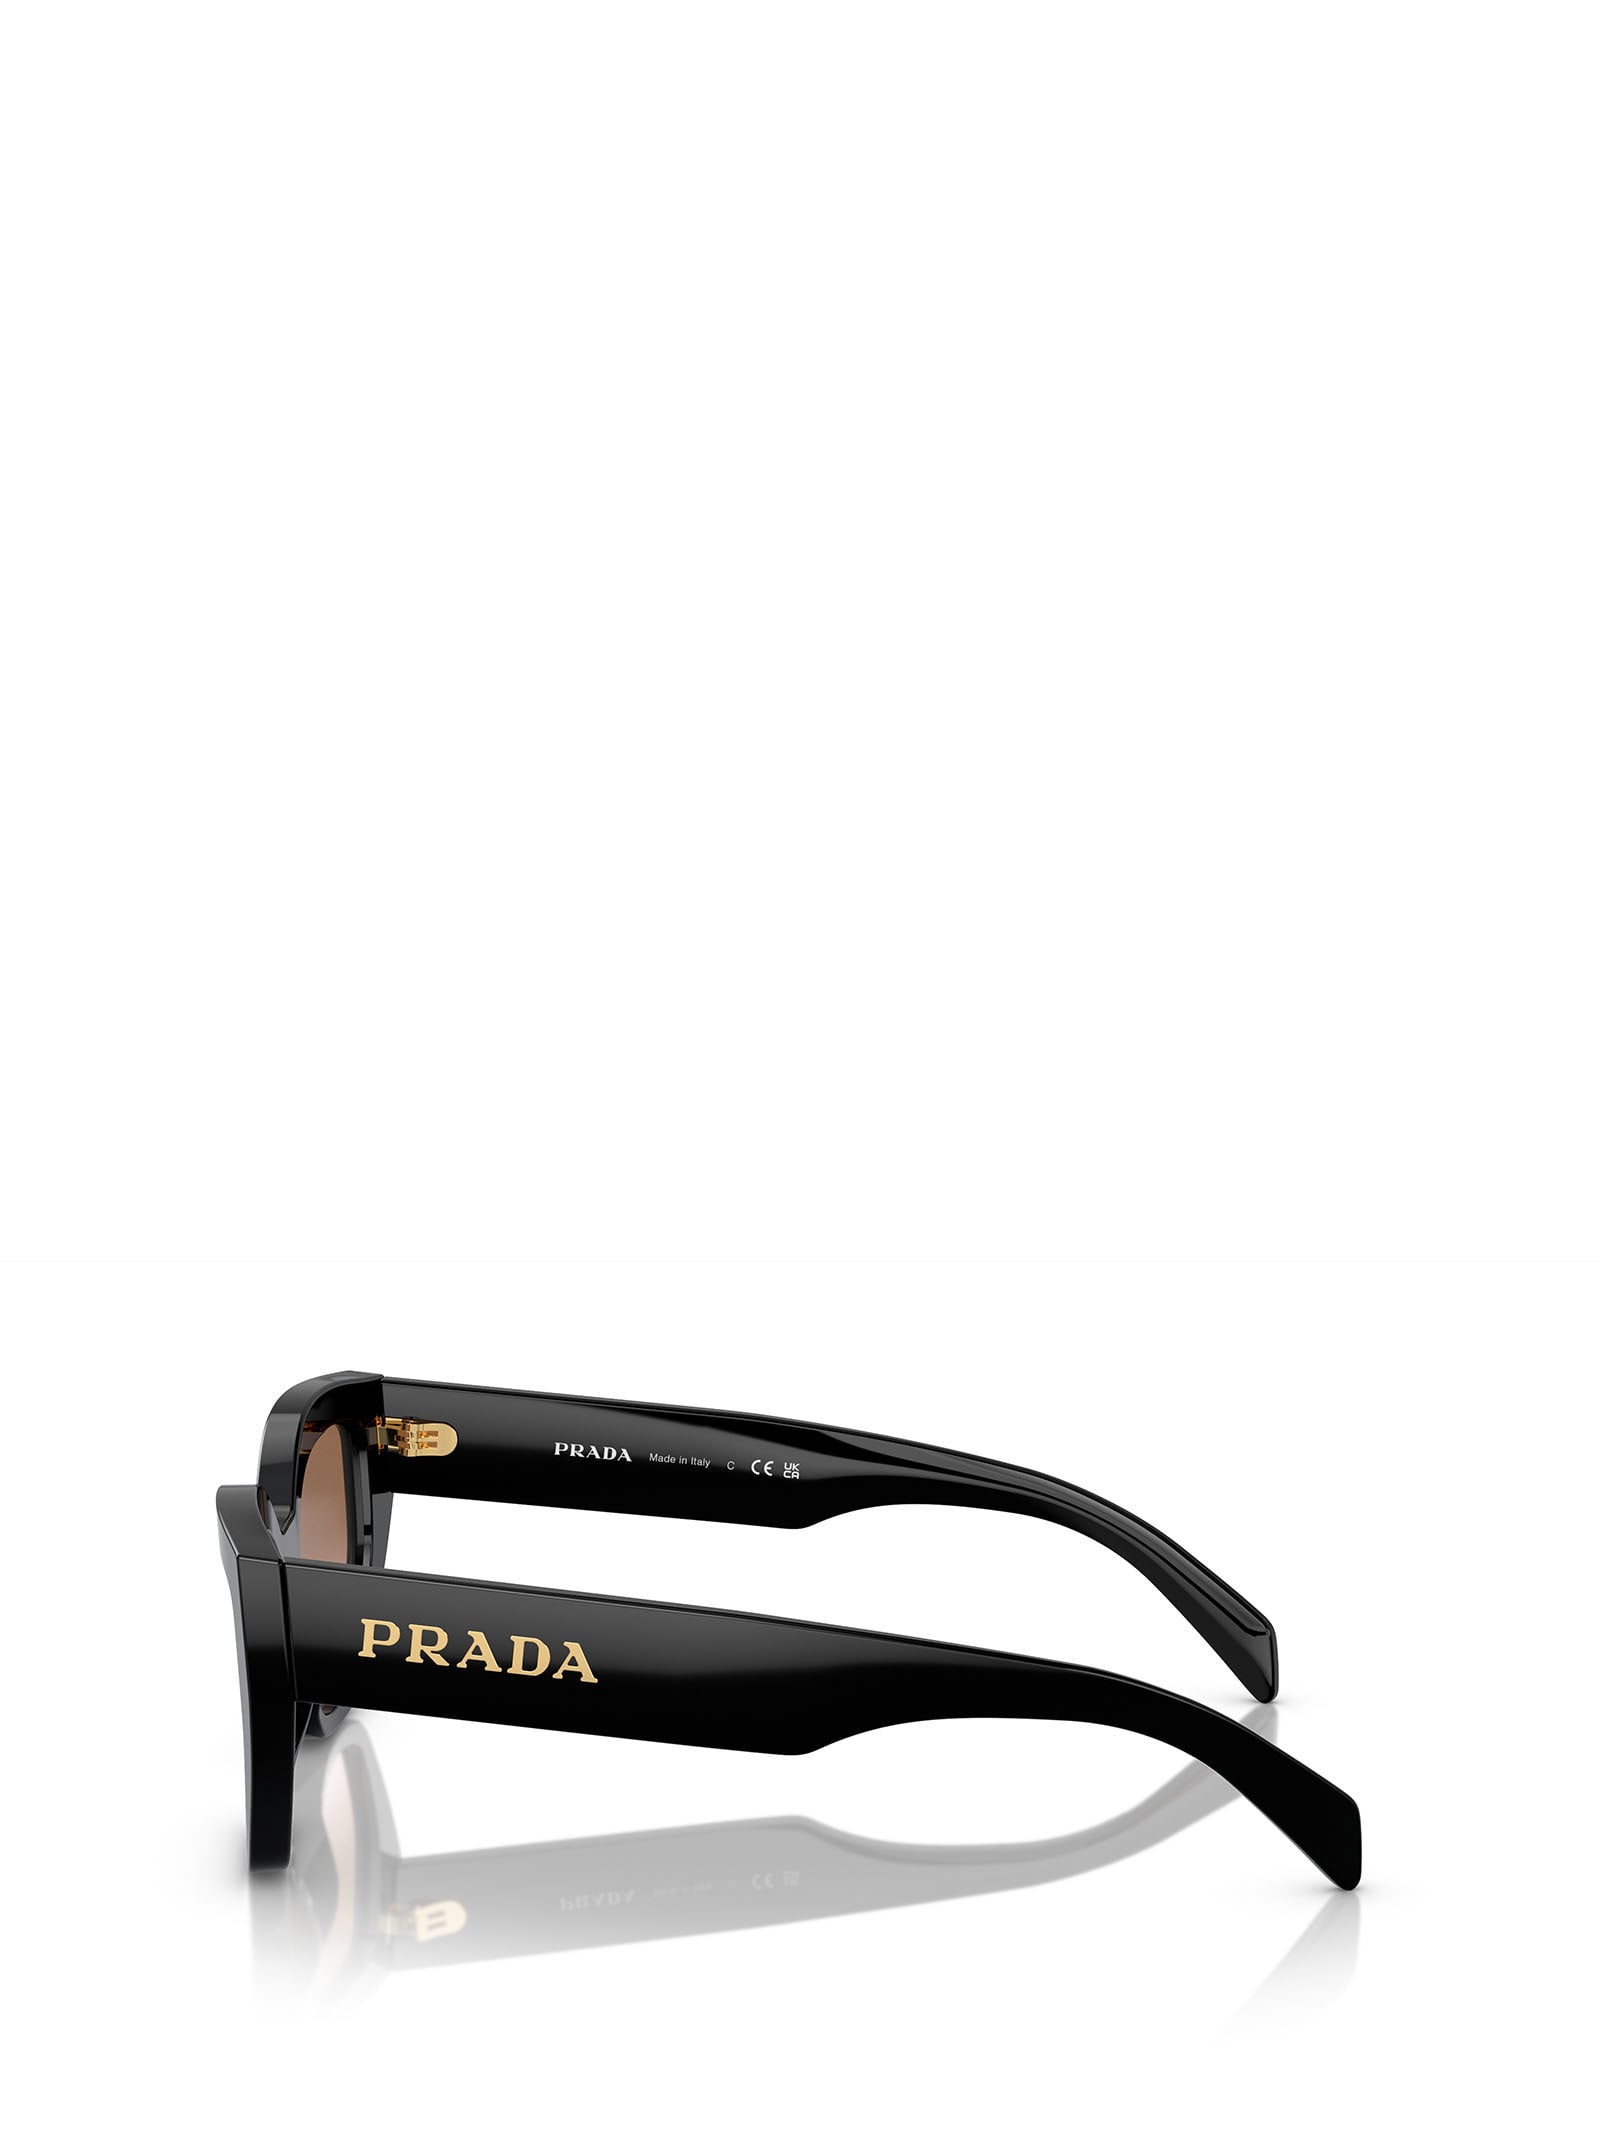 Shop Prada Pr A09s Black Sunglasses